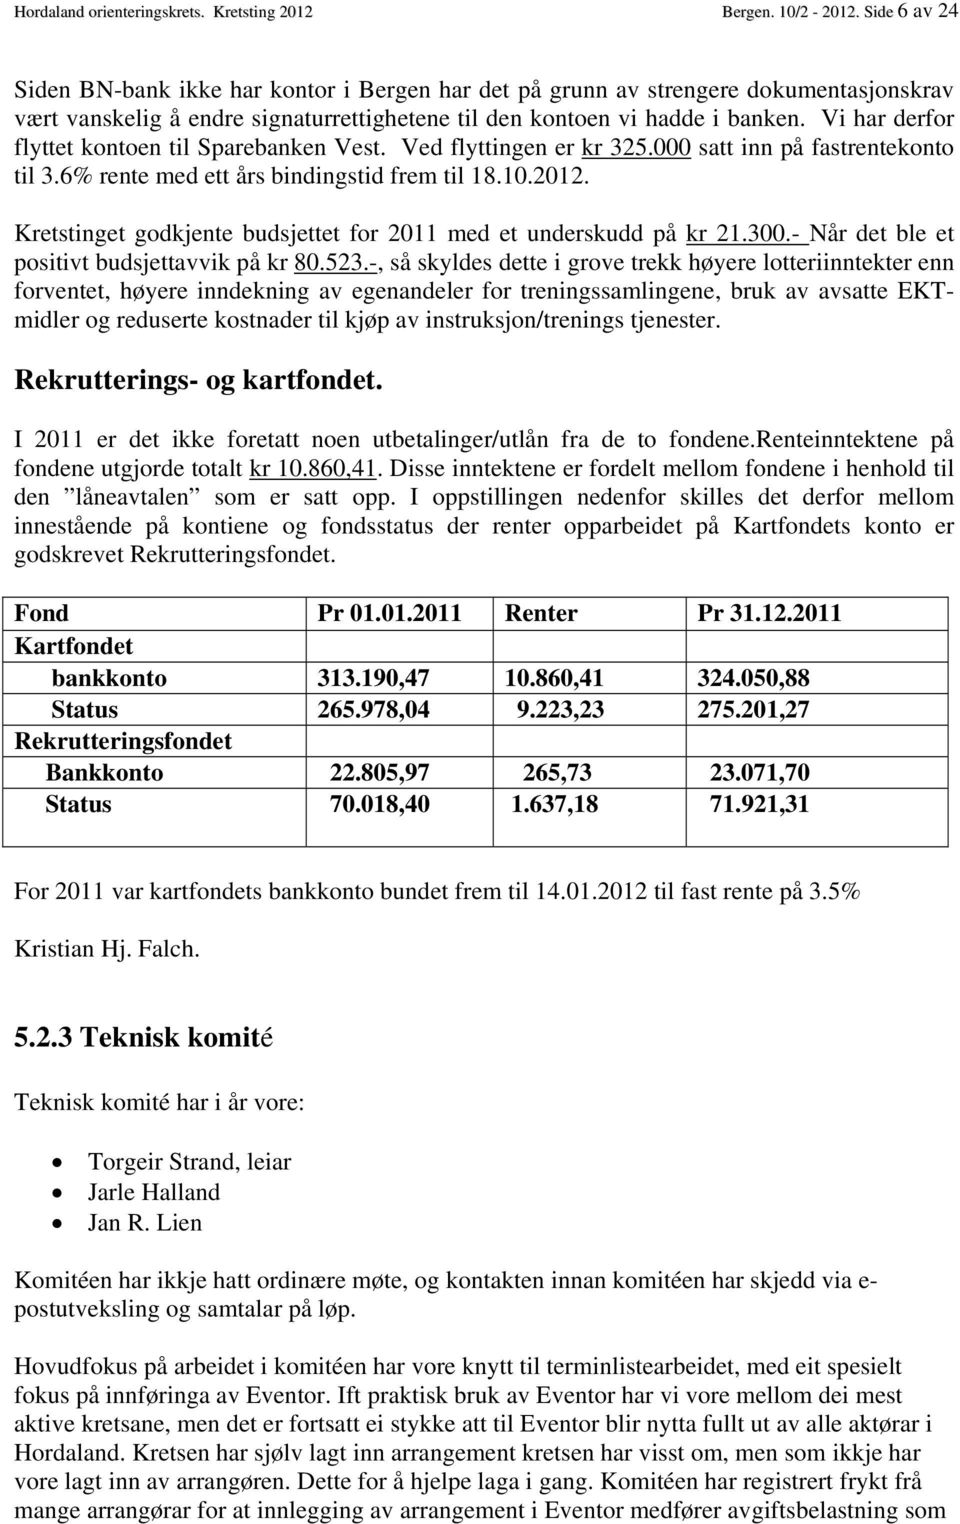 Vi har derfor flyttet kontoen til Sparebanken Vest. Ved flyttingen er kr 325.000 satt inn på fastrentekonto til 3.6% rente med ett års bindingstid frem til 18.10.2012.